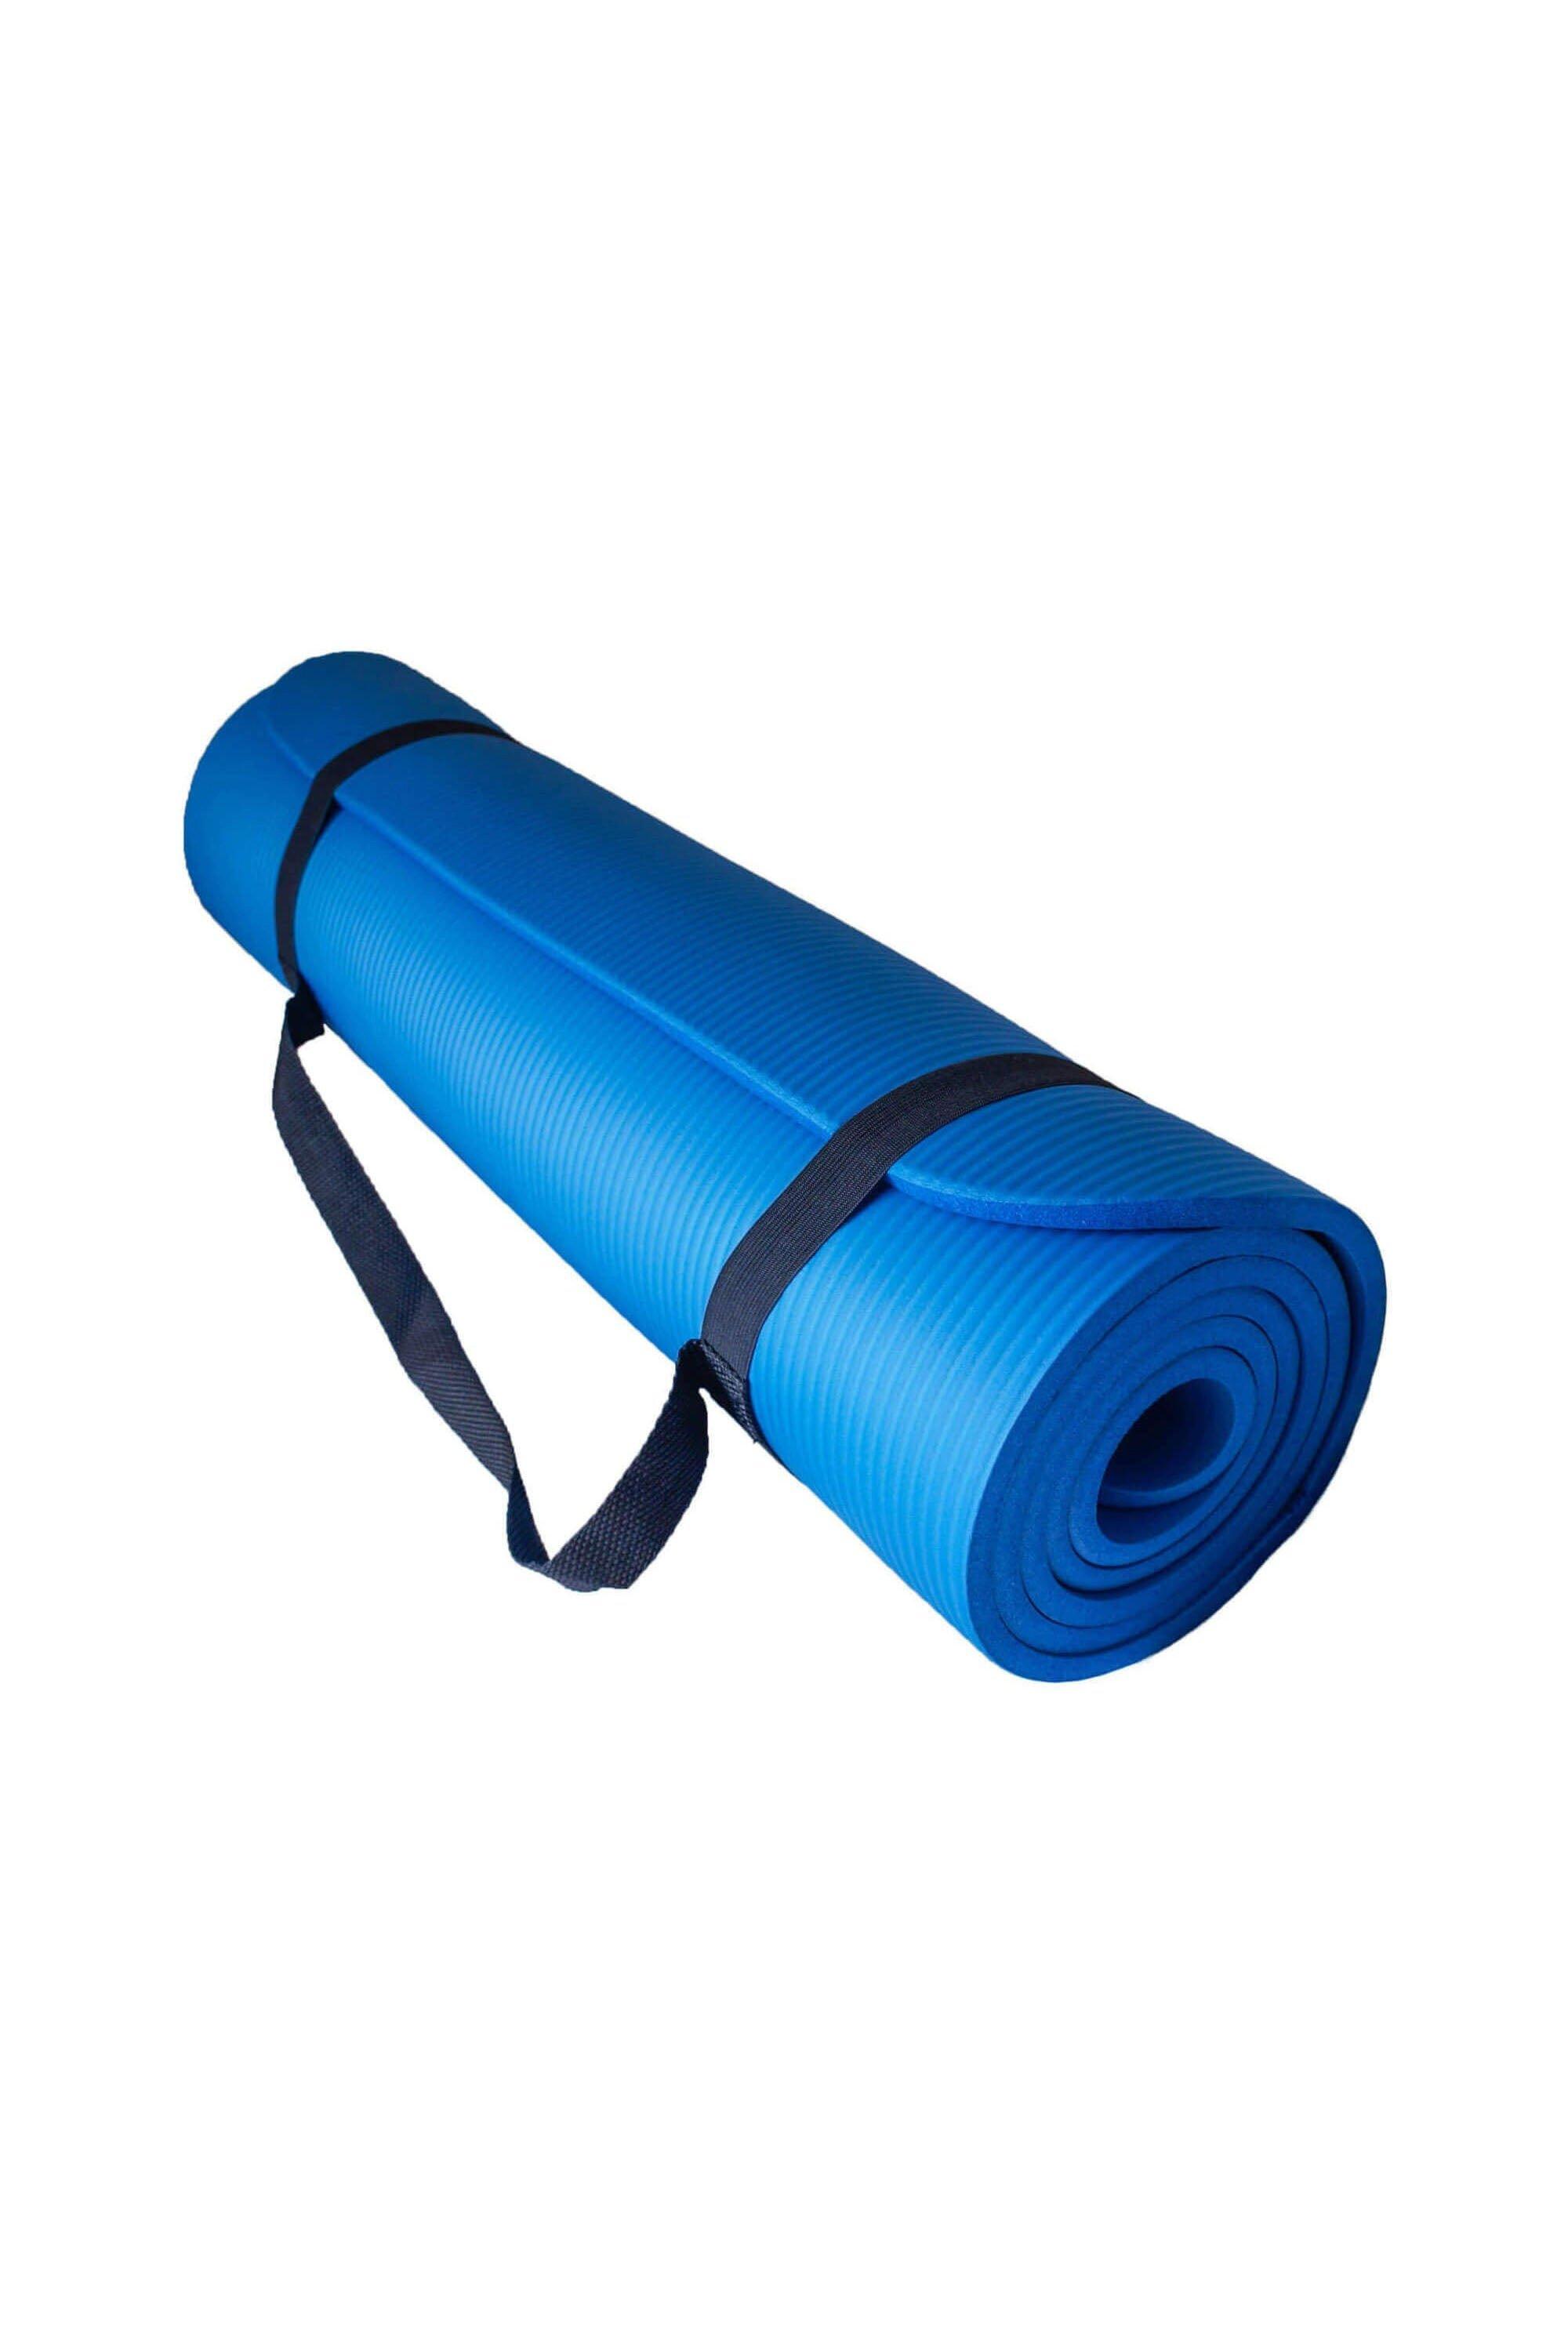 Мягкий коврик для упражнений для йоги с воздушным потоком 10 мм Azure, синий коврик для йоги triangles yc из микрофибры и каучука